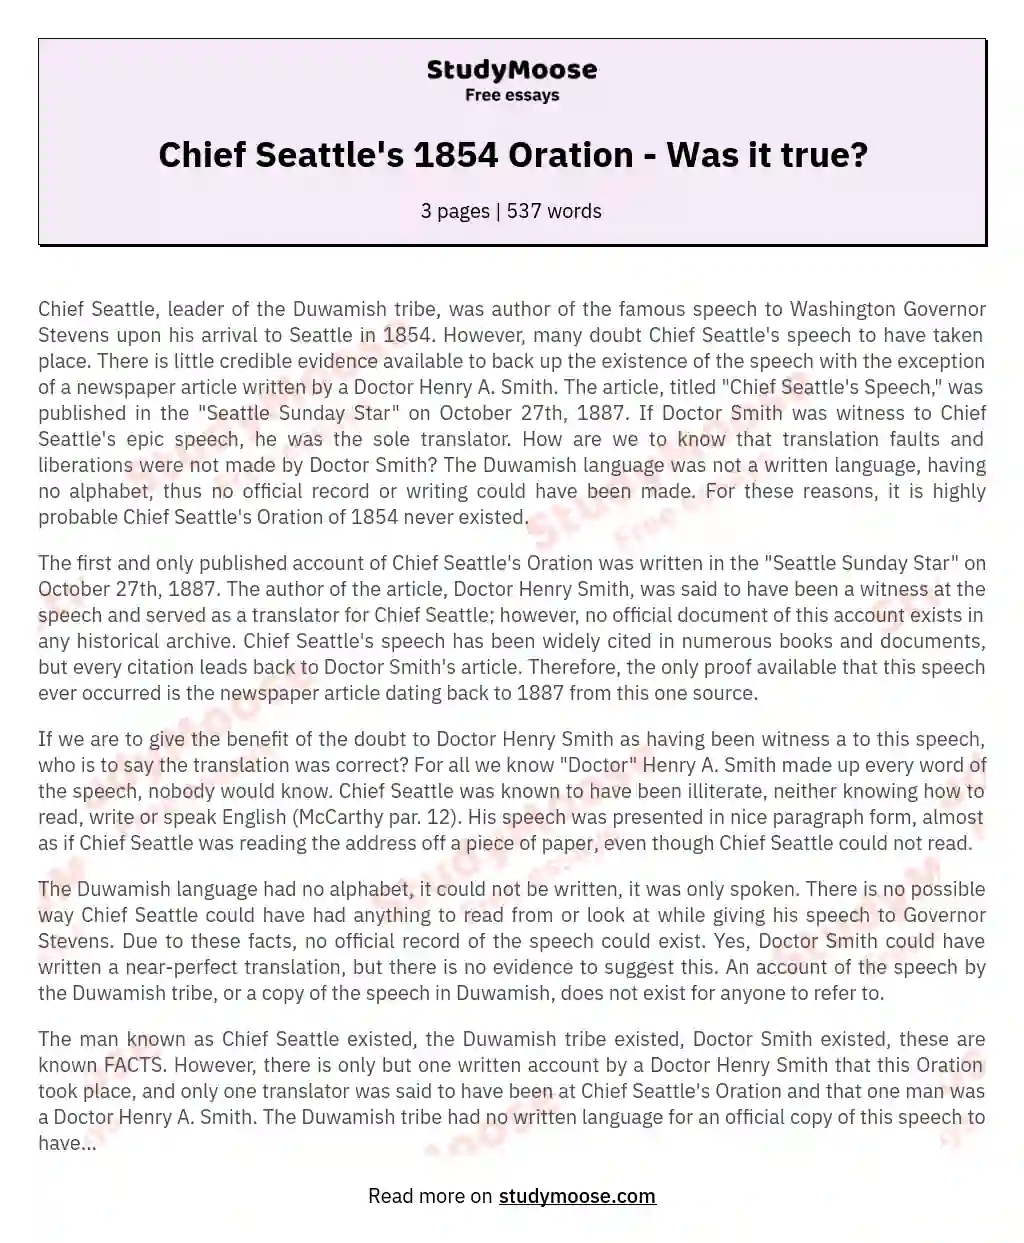 Chief Seattle's 1854 Oration - Was it true? essay